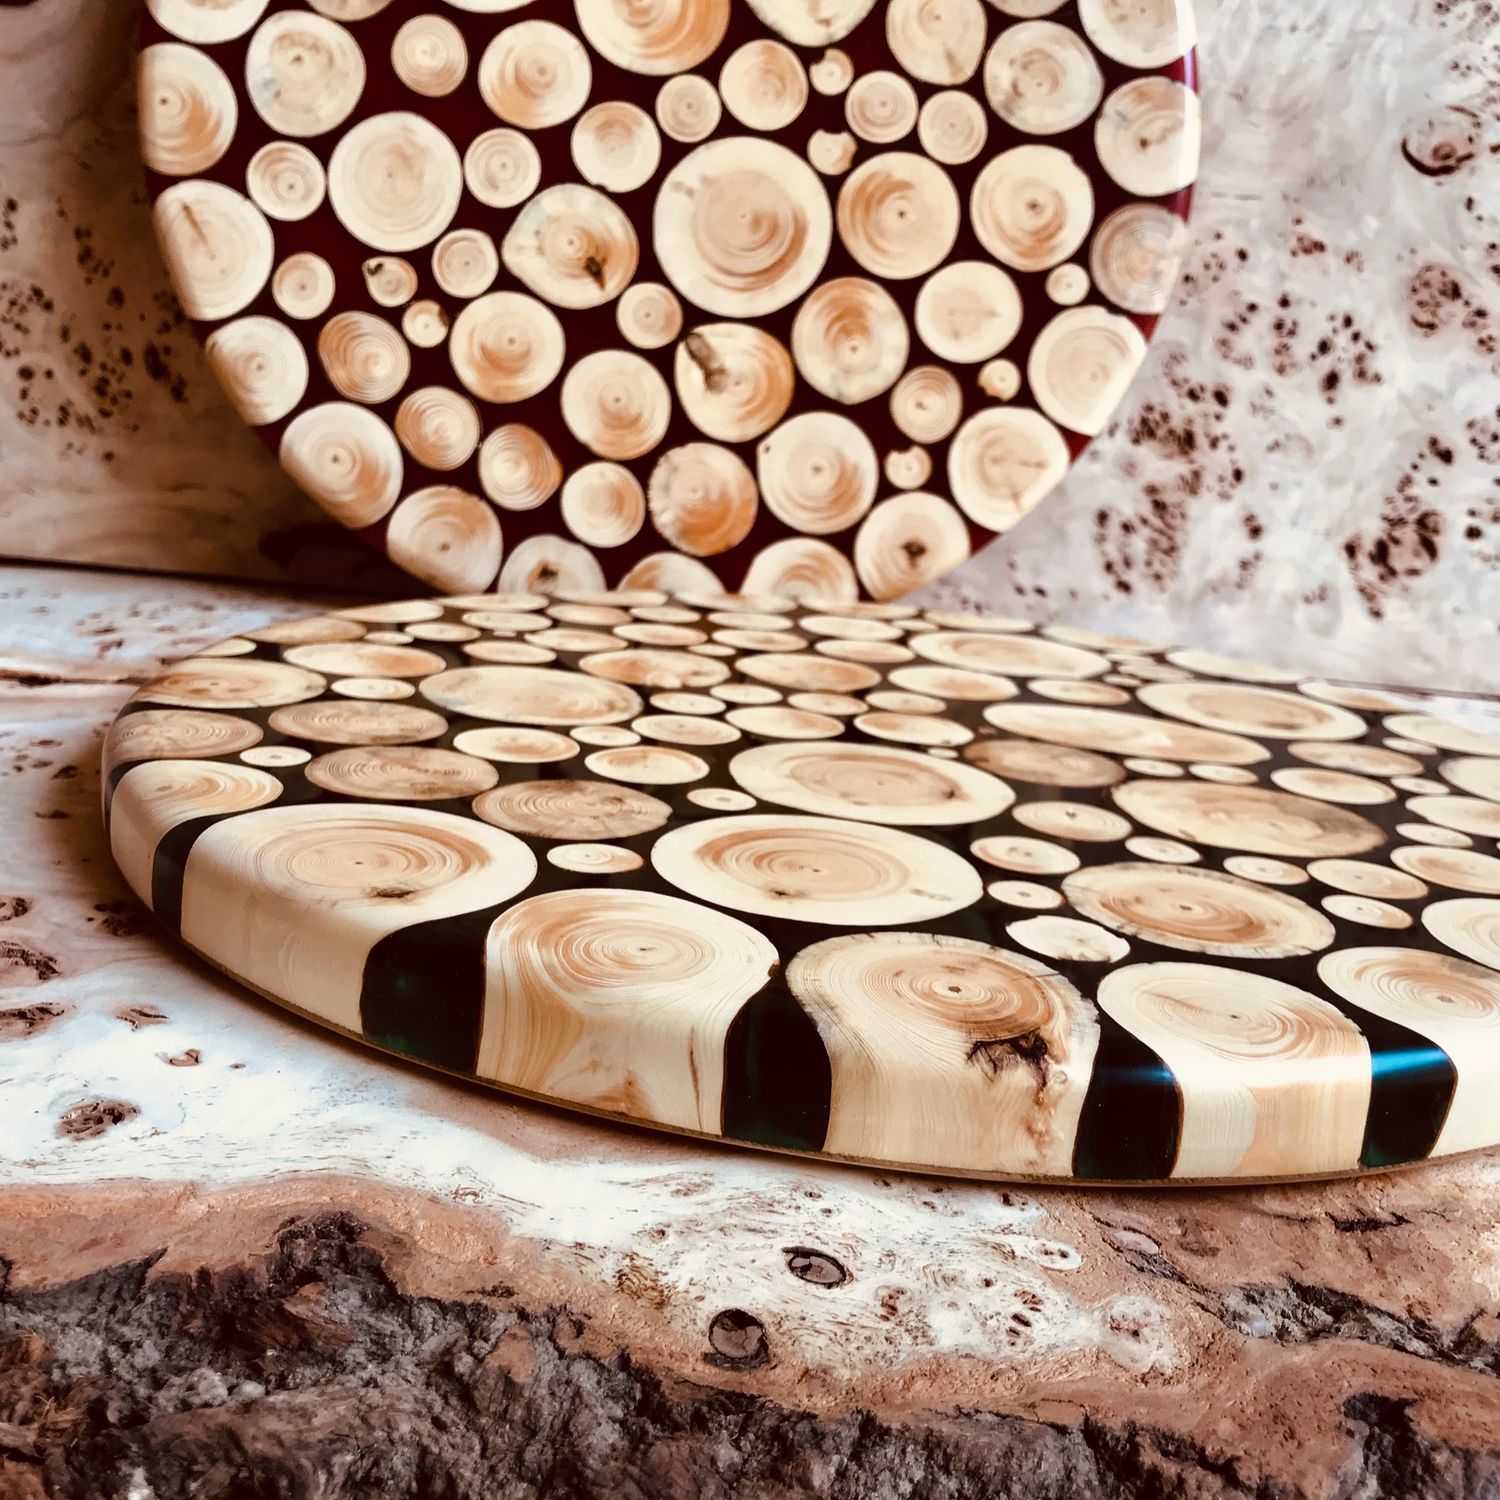 Поделки из дерева своими руками: лучшие варианты для начинающих и обзор самых интересных решений использования древесины (115 фото)